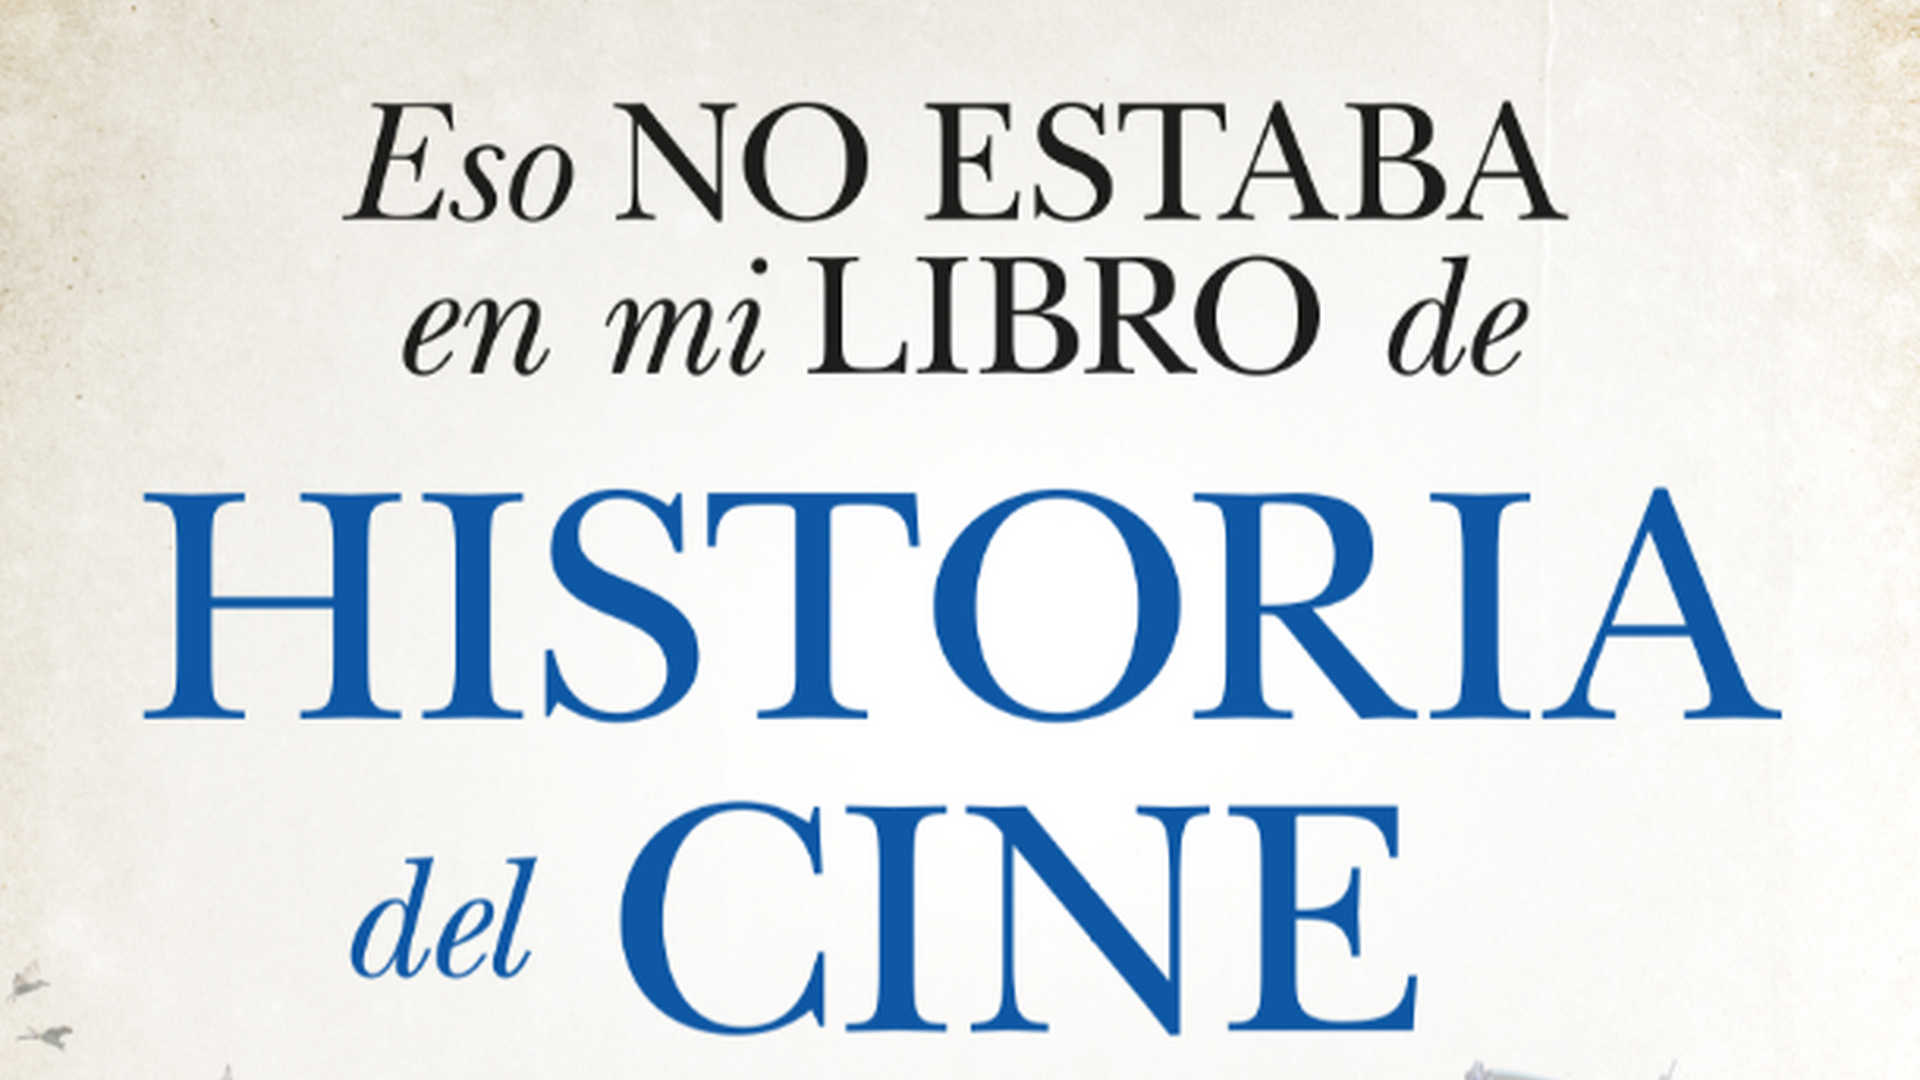 'Eso no estaba en mi libro de Historia de Cine', de Javier Ortega